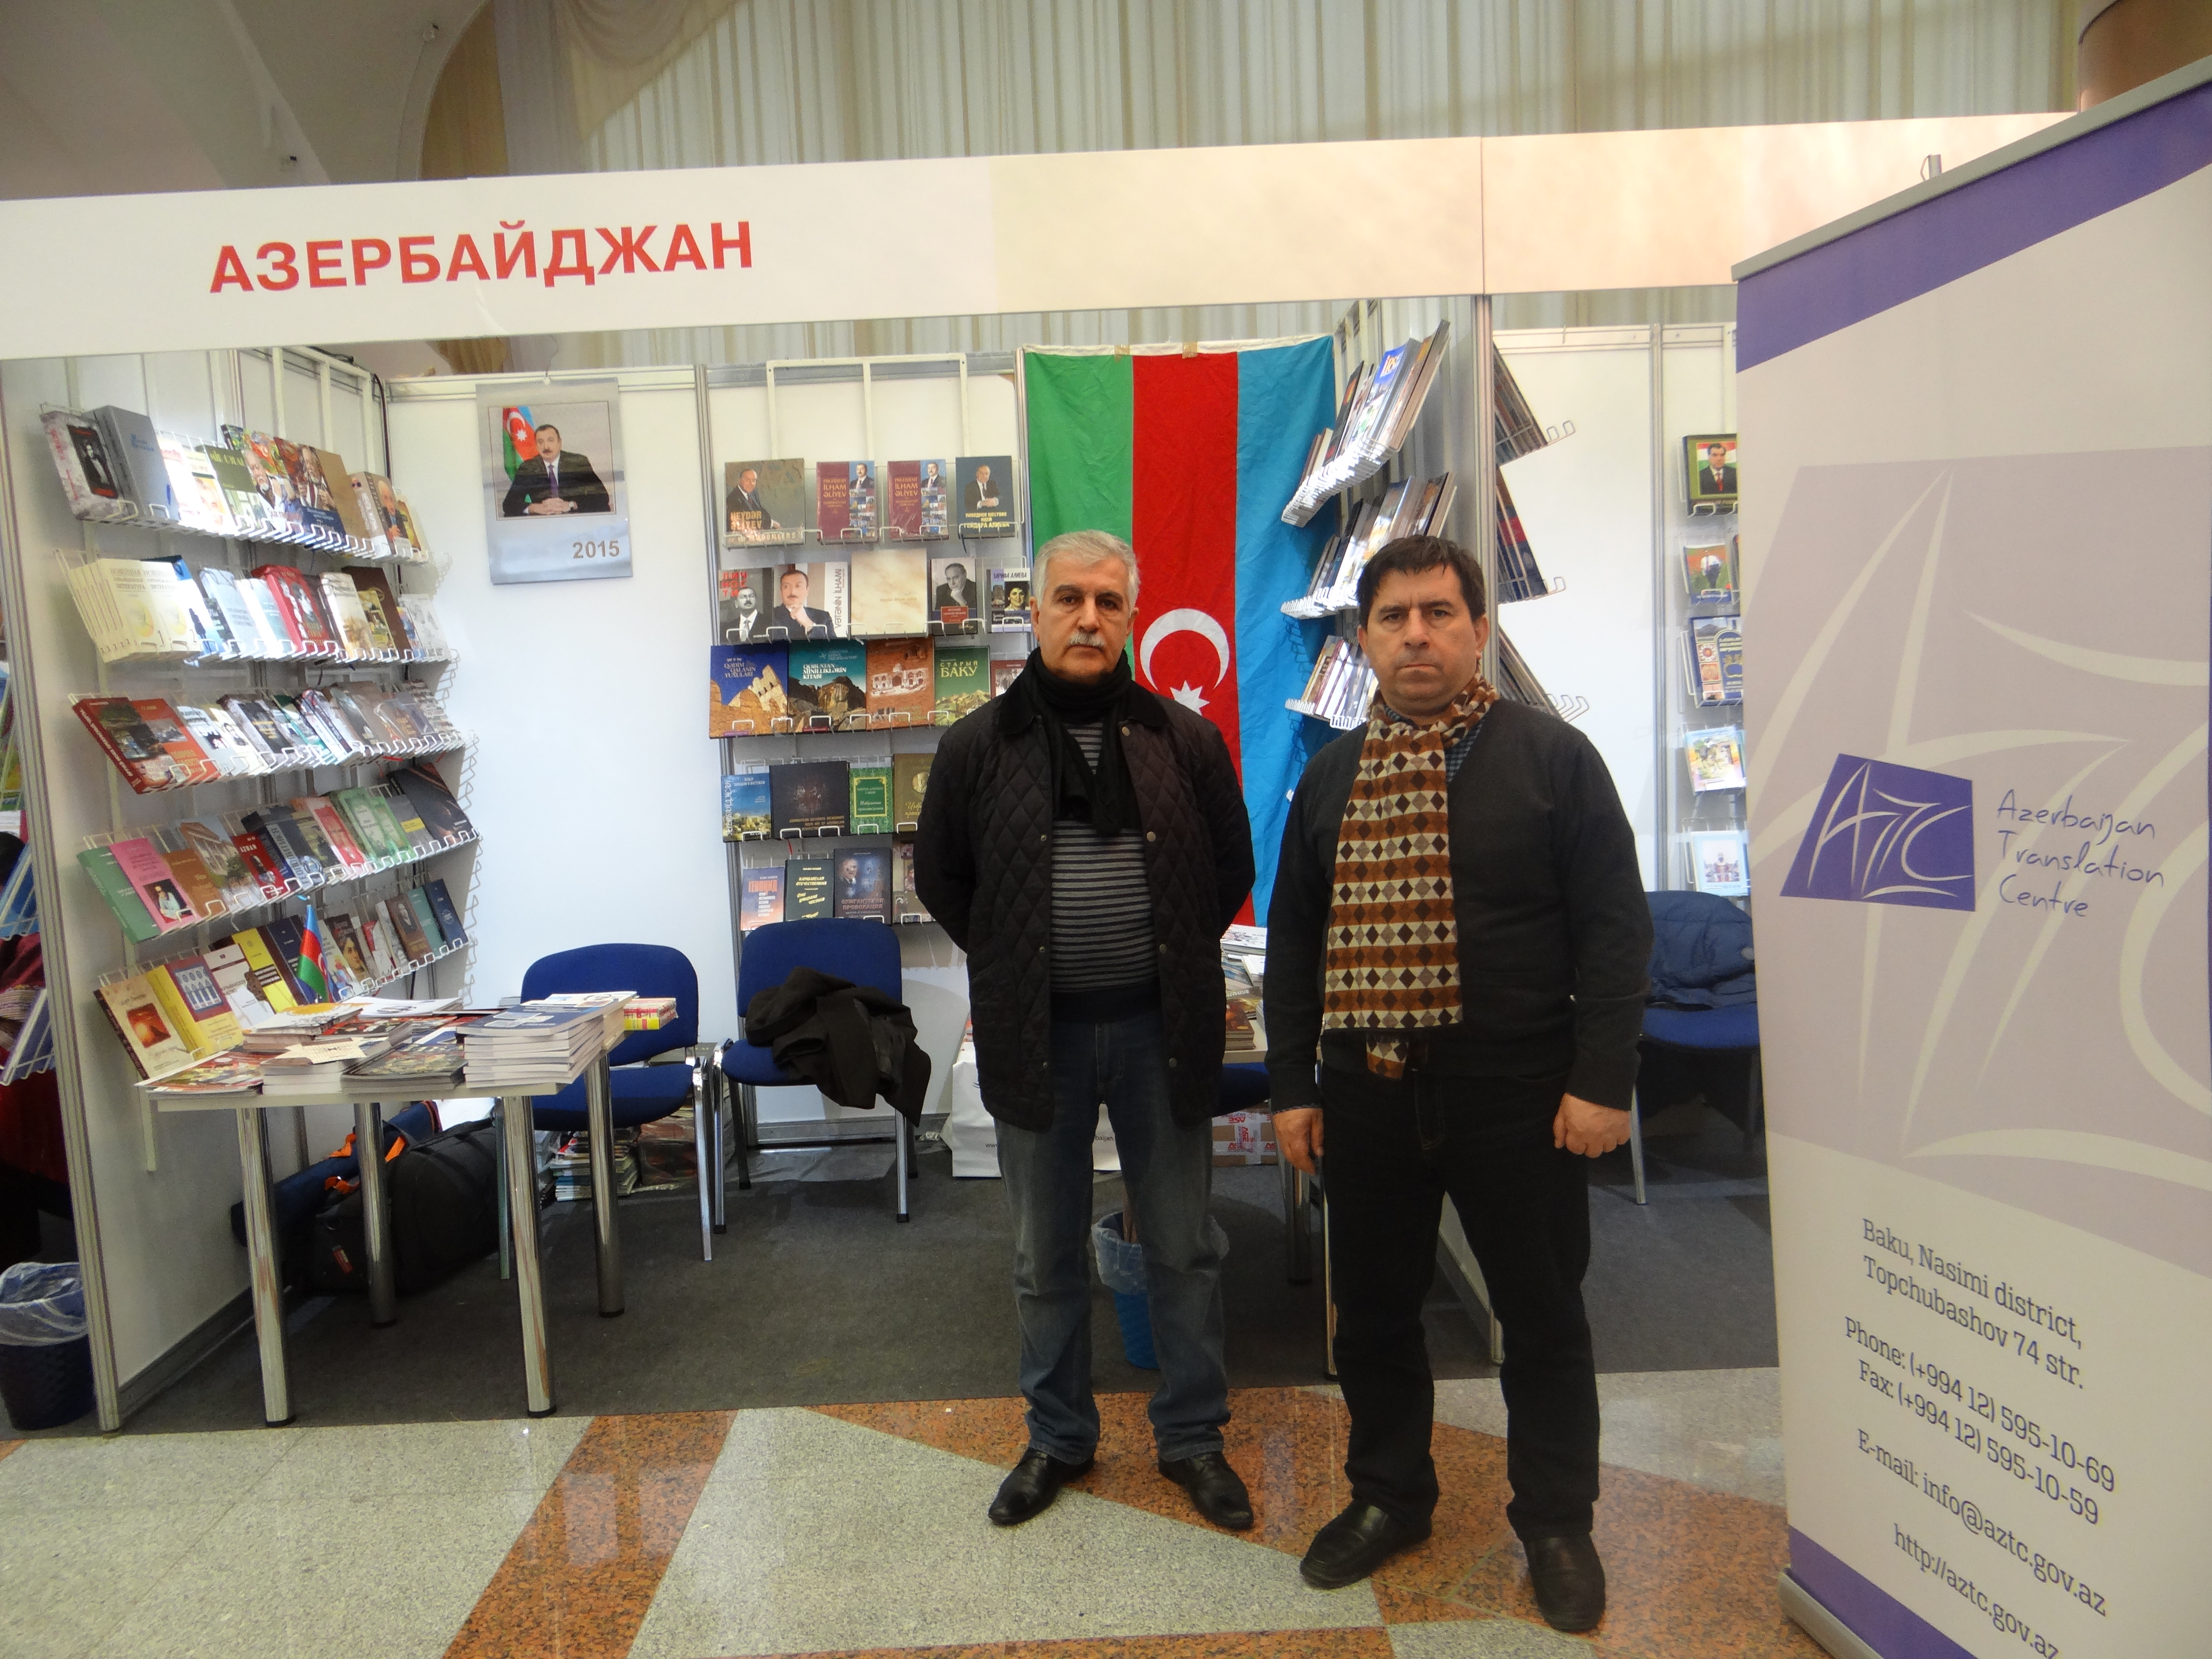 Книги азербайджан. Welcome to Azerbaijan.